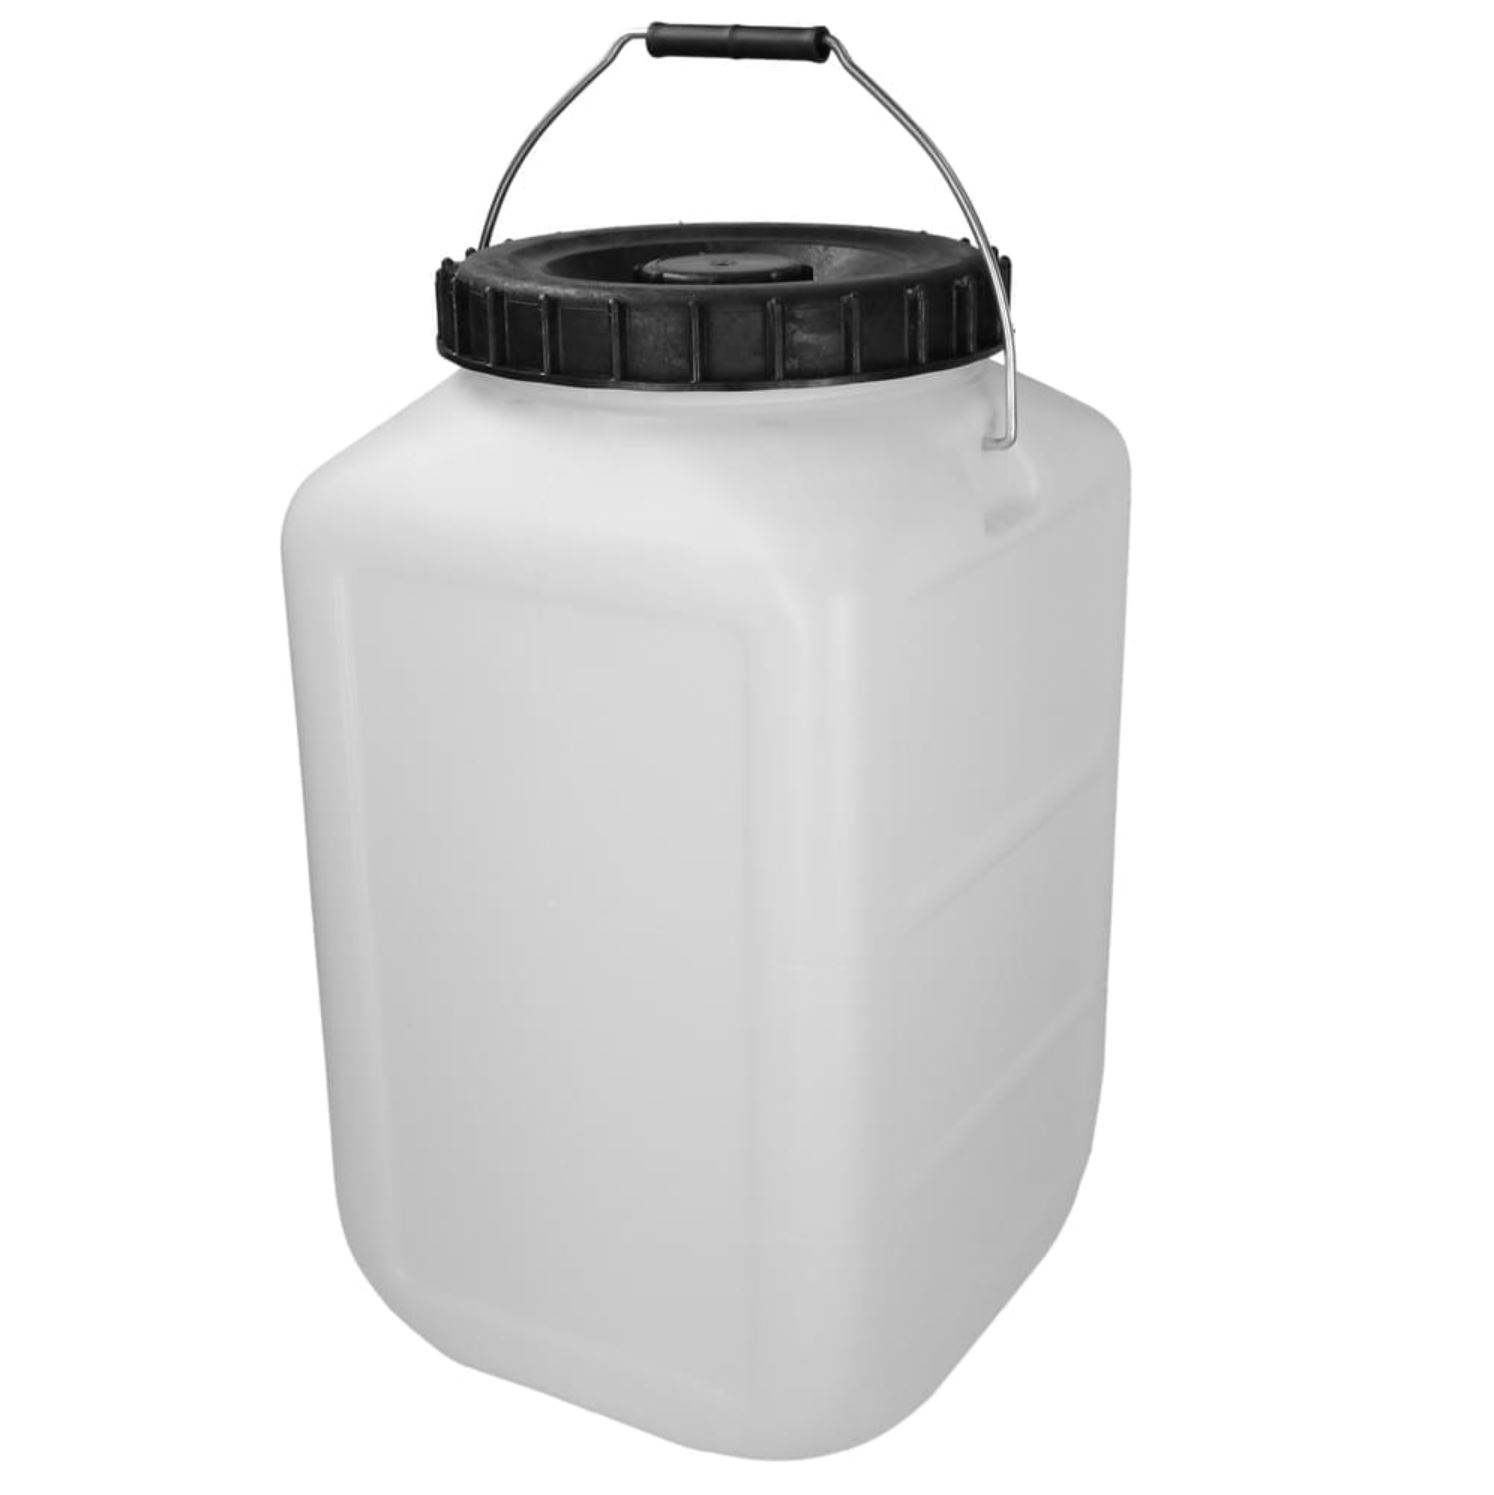 Öl-Sammelbehälter 30 Liter mit Schraubverschluss